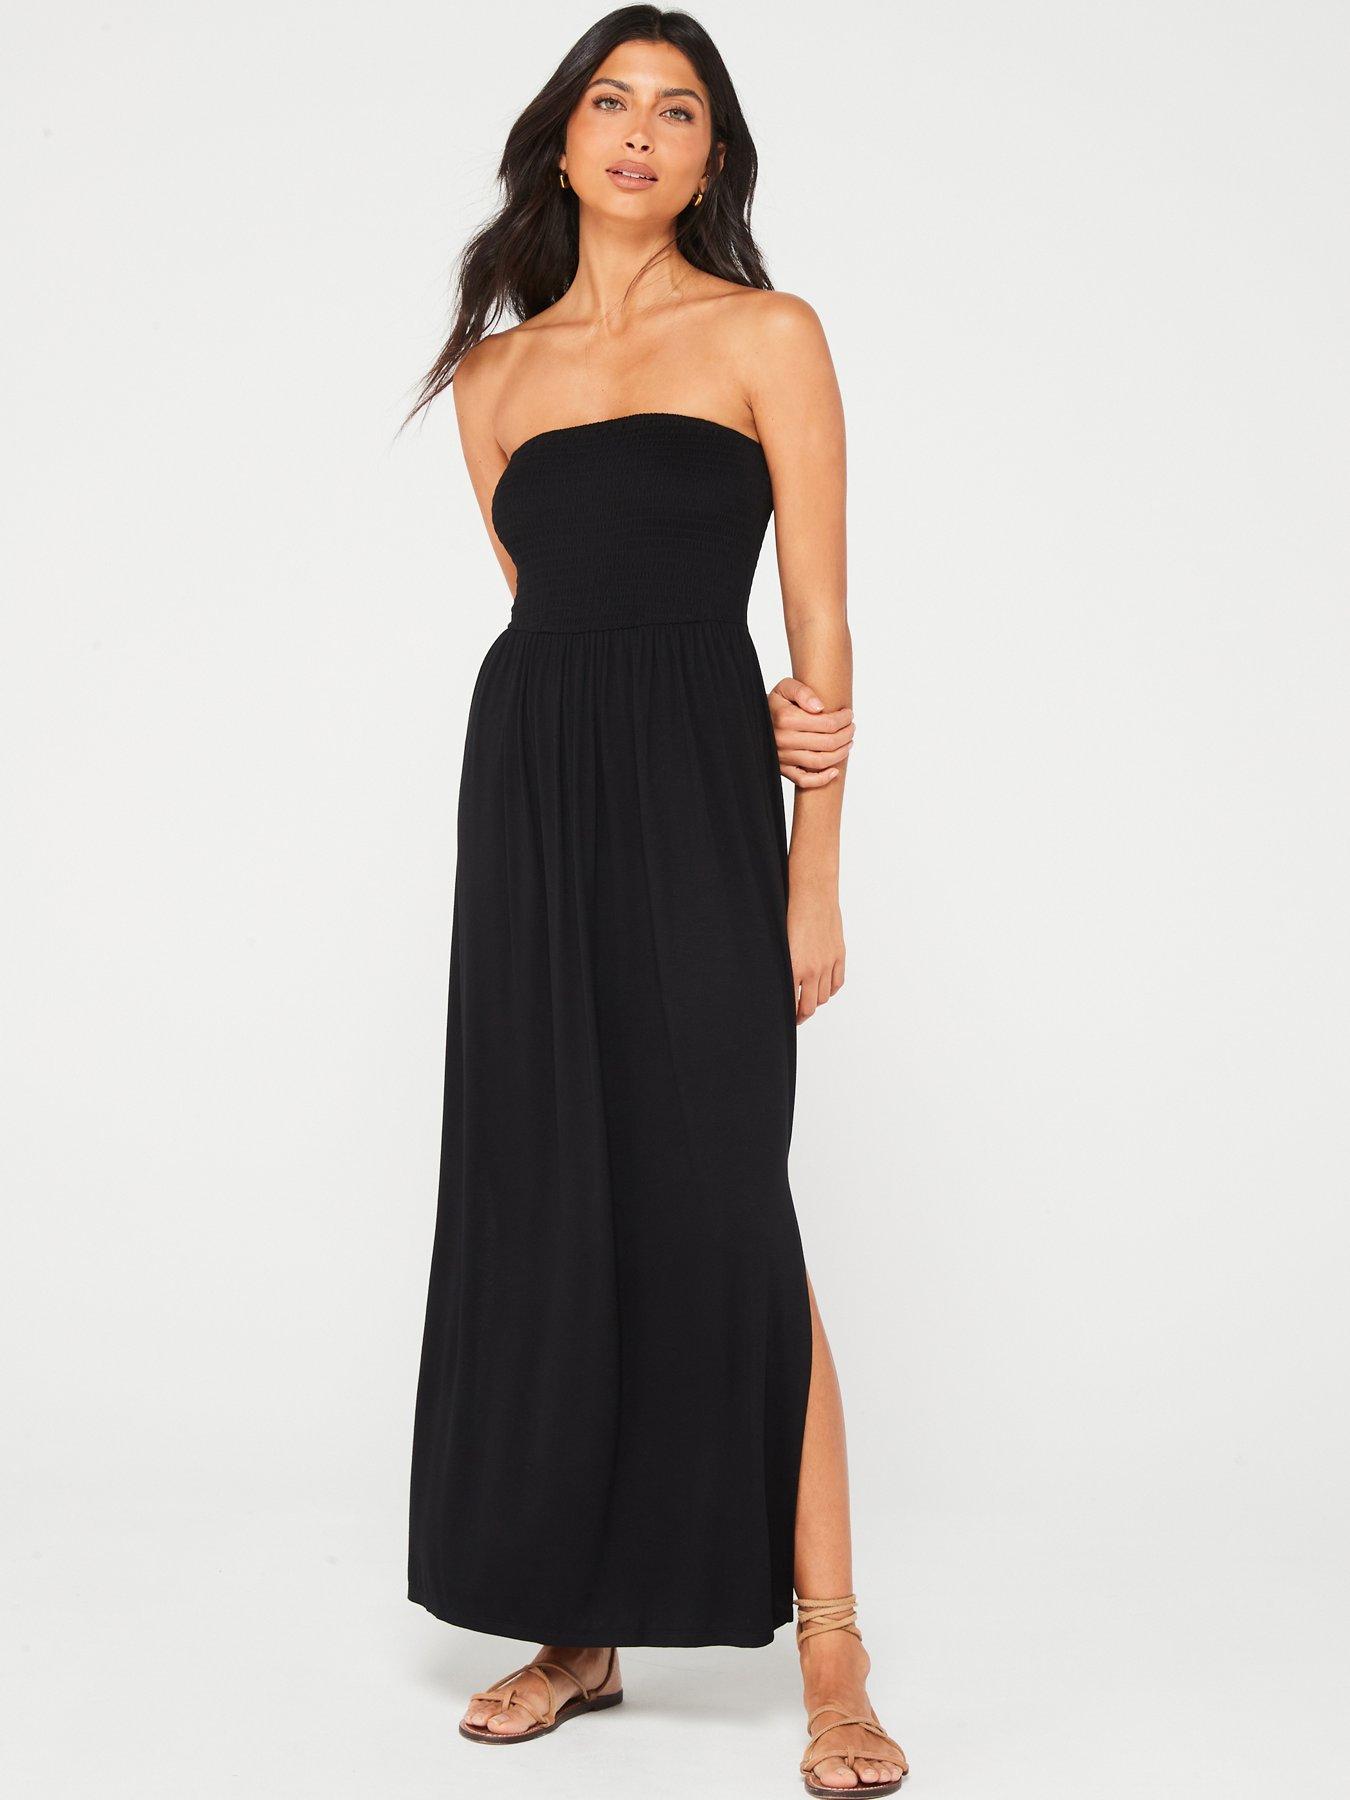 Black Linen Strapless Dress, Summer Vacation Dress, Loose Maxi